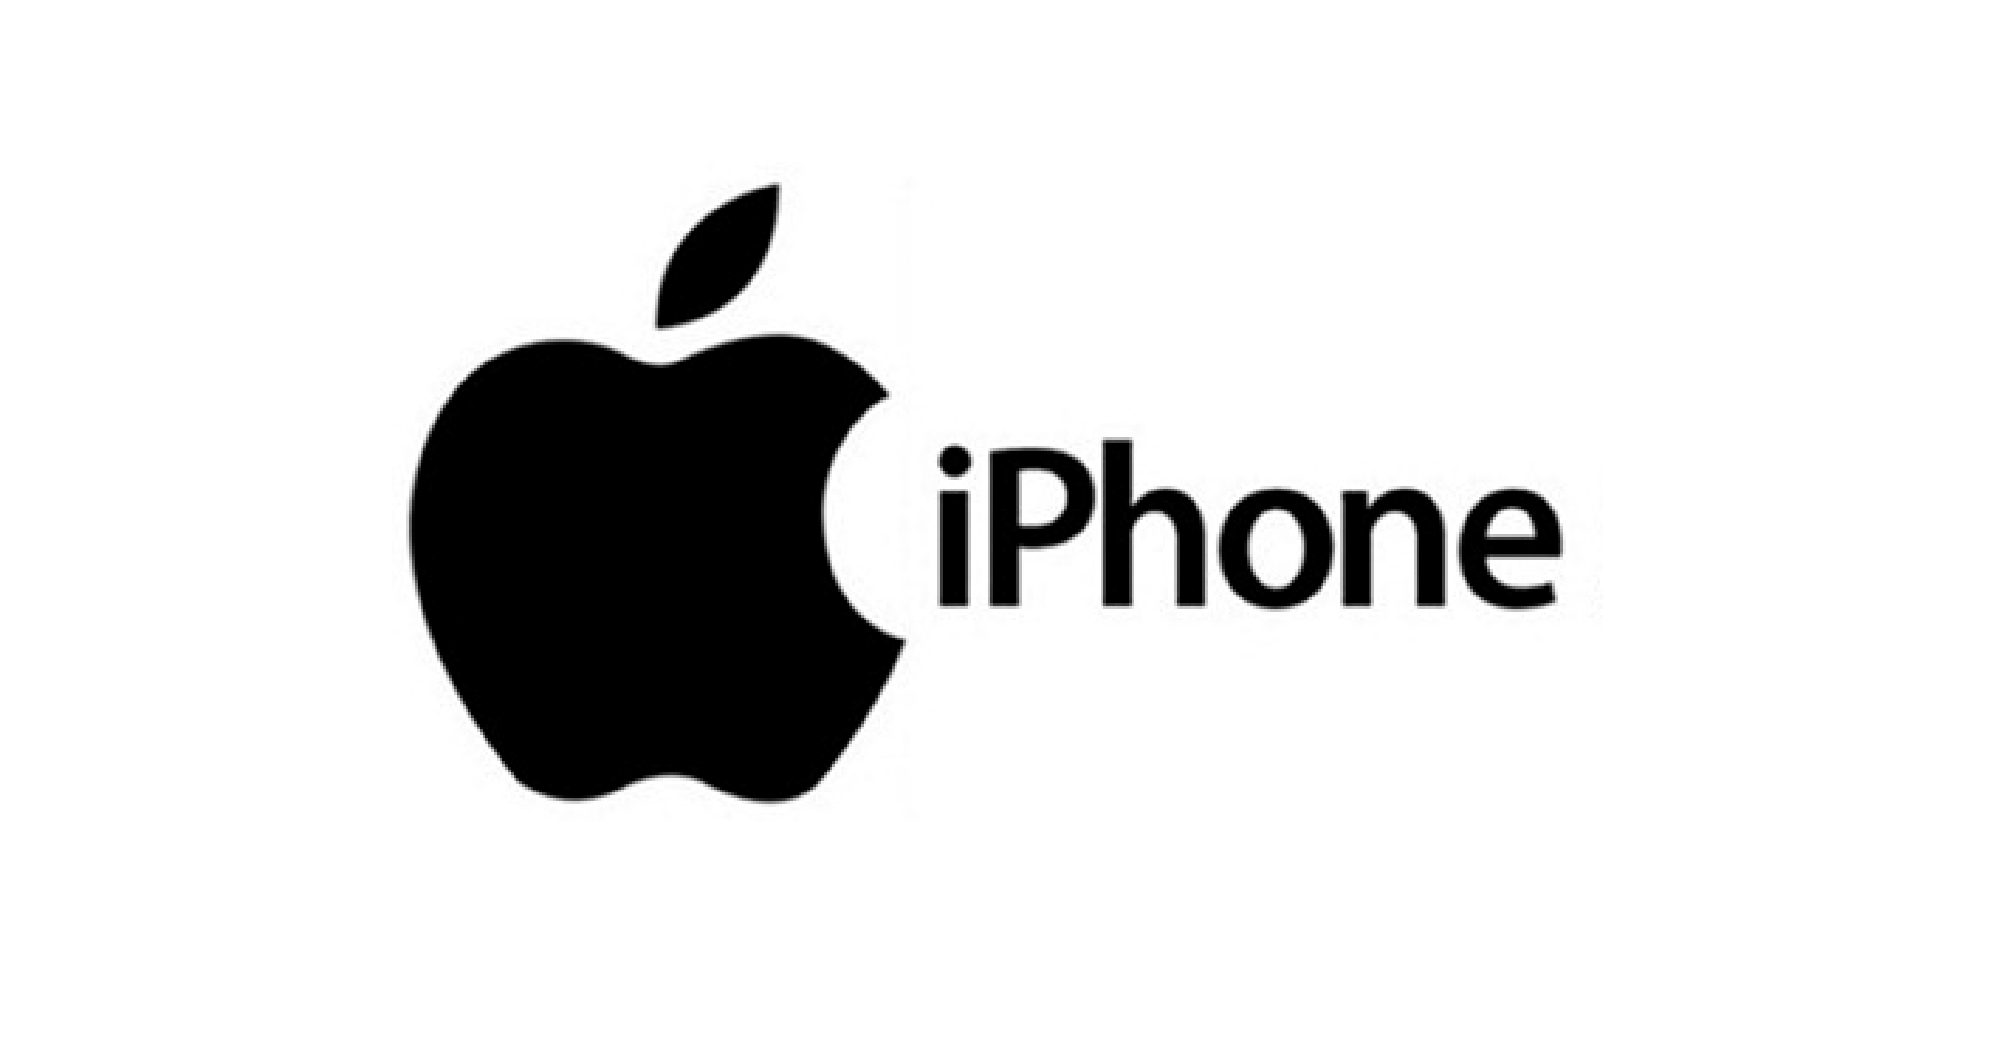 iPhone Logo - iPhone Logo Transparent PNG Logos